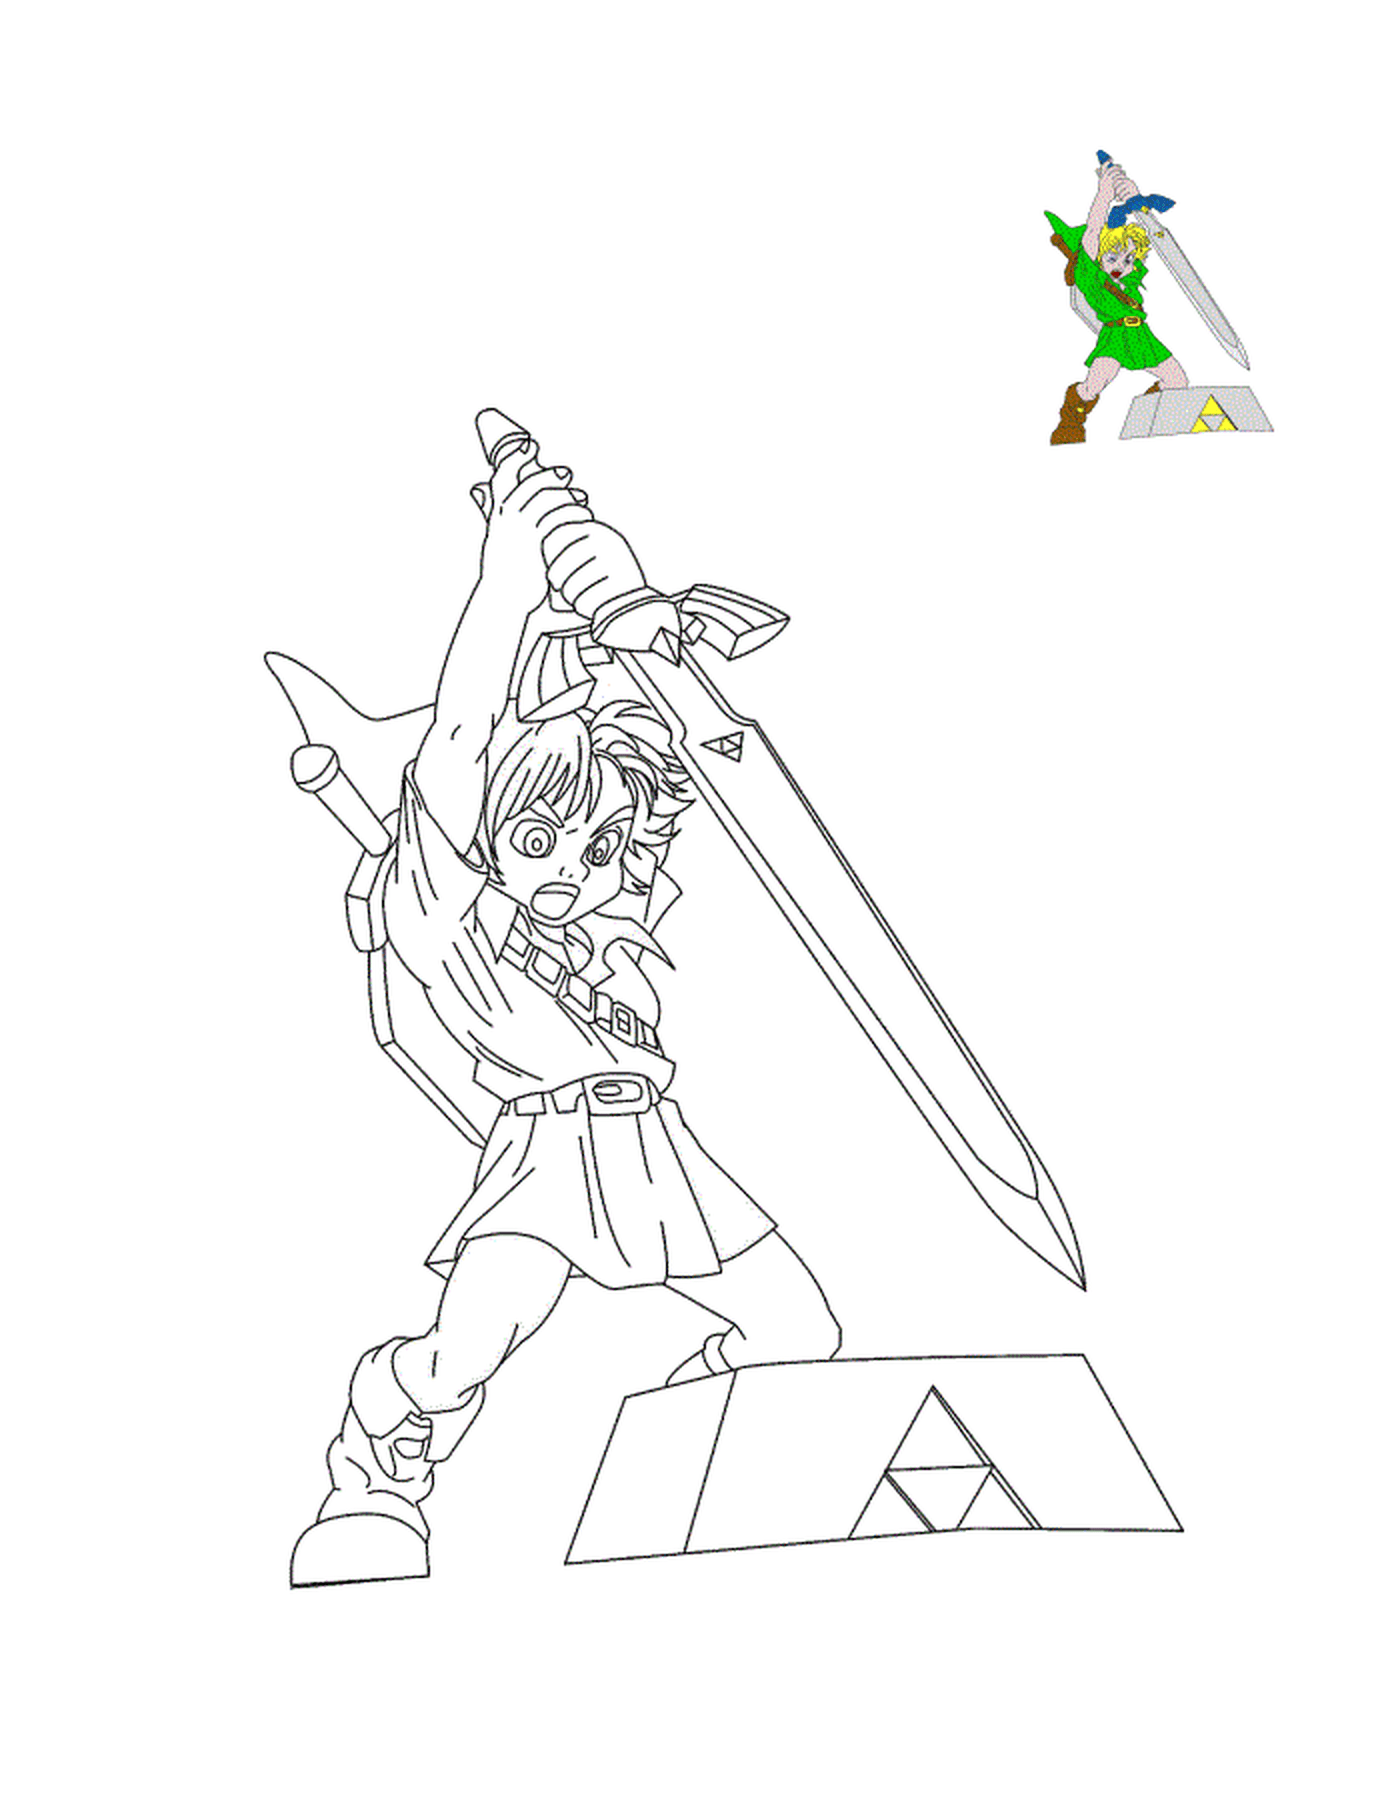  Zelda's legendary sword 